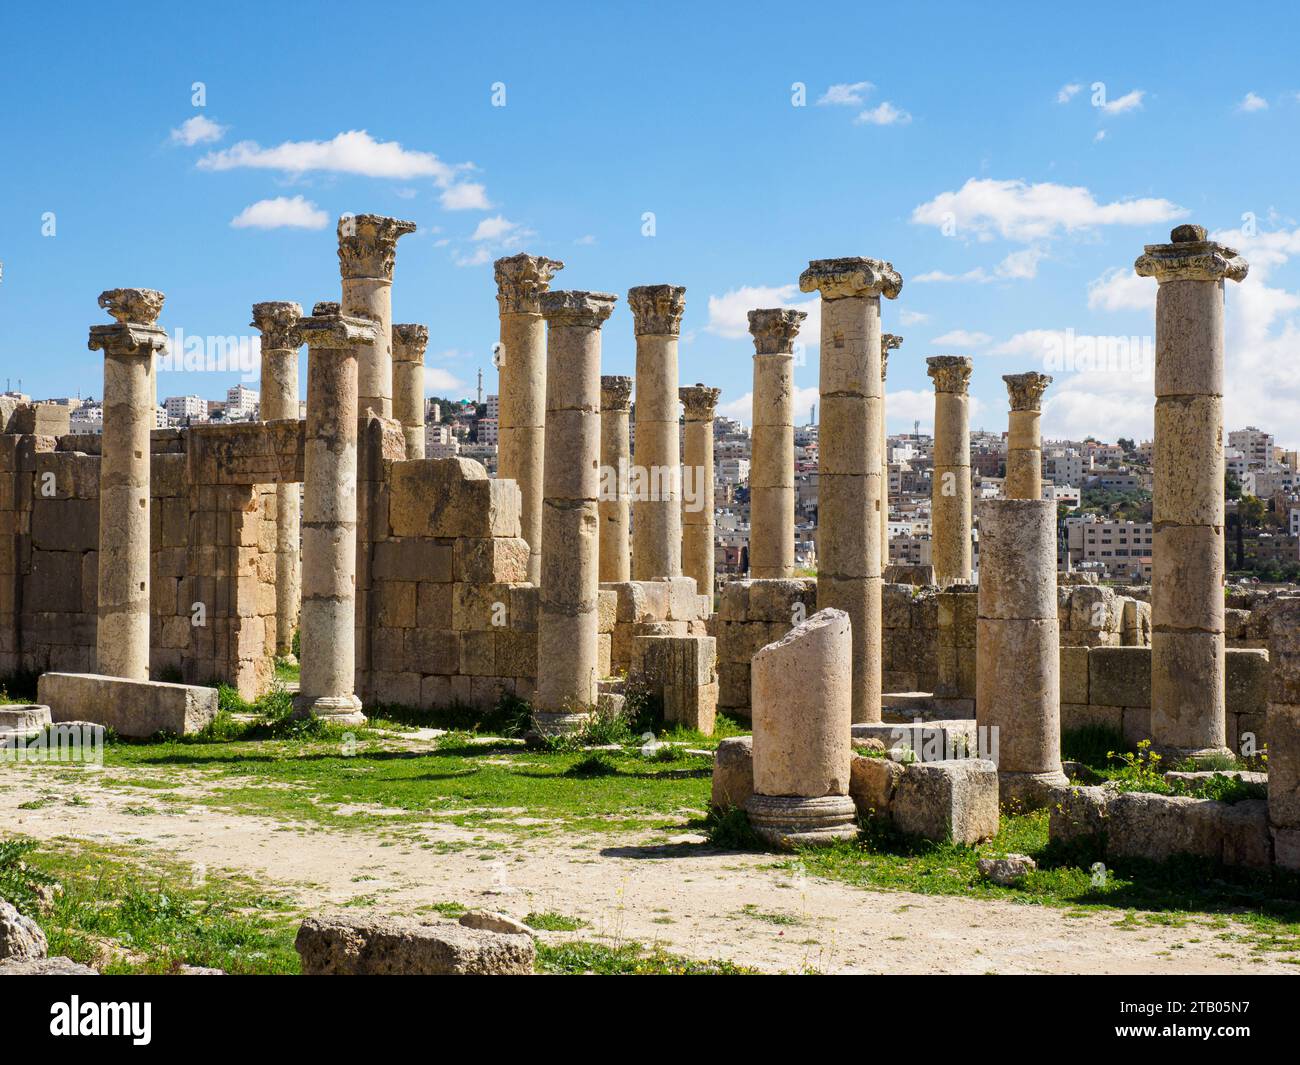 Colonne nell'antica città di Jerash, che si ritiene sia stata fondata nel 331 a.C. da Alessandro Magno, Giordania Foto Stock